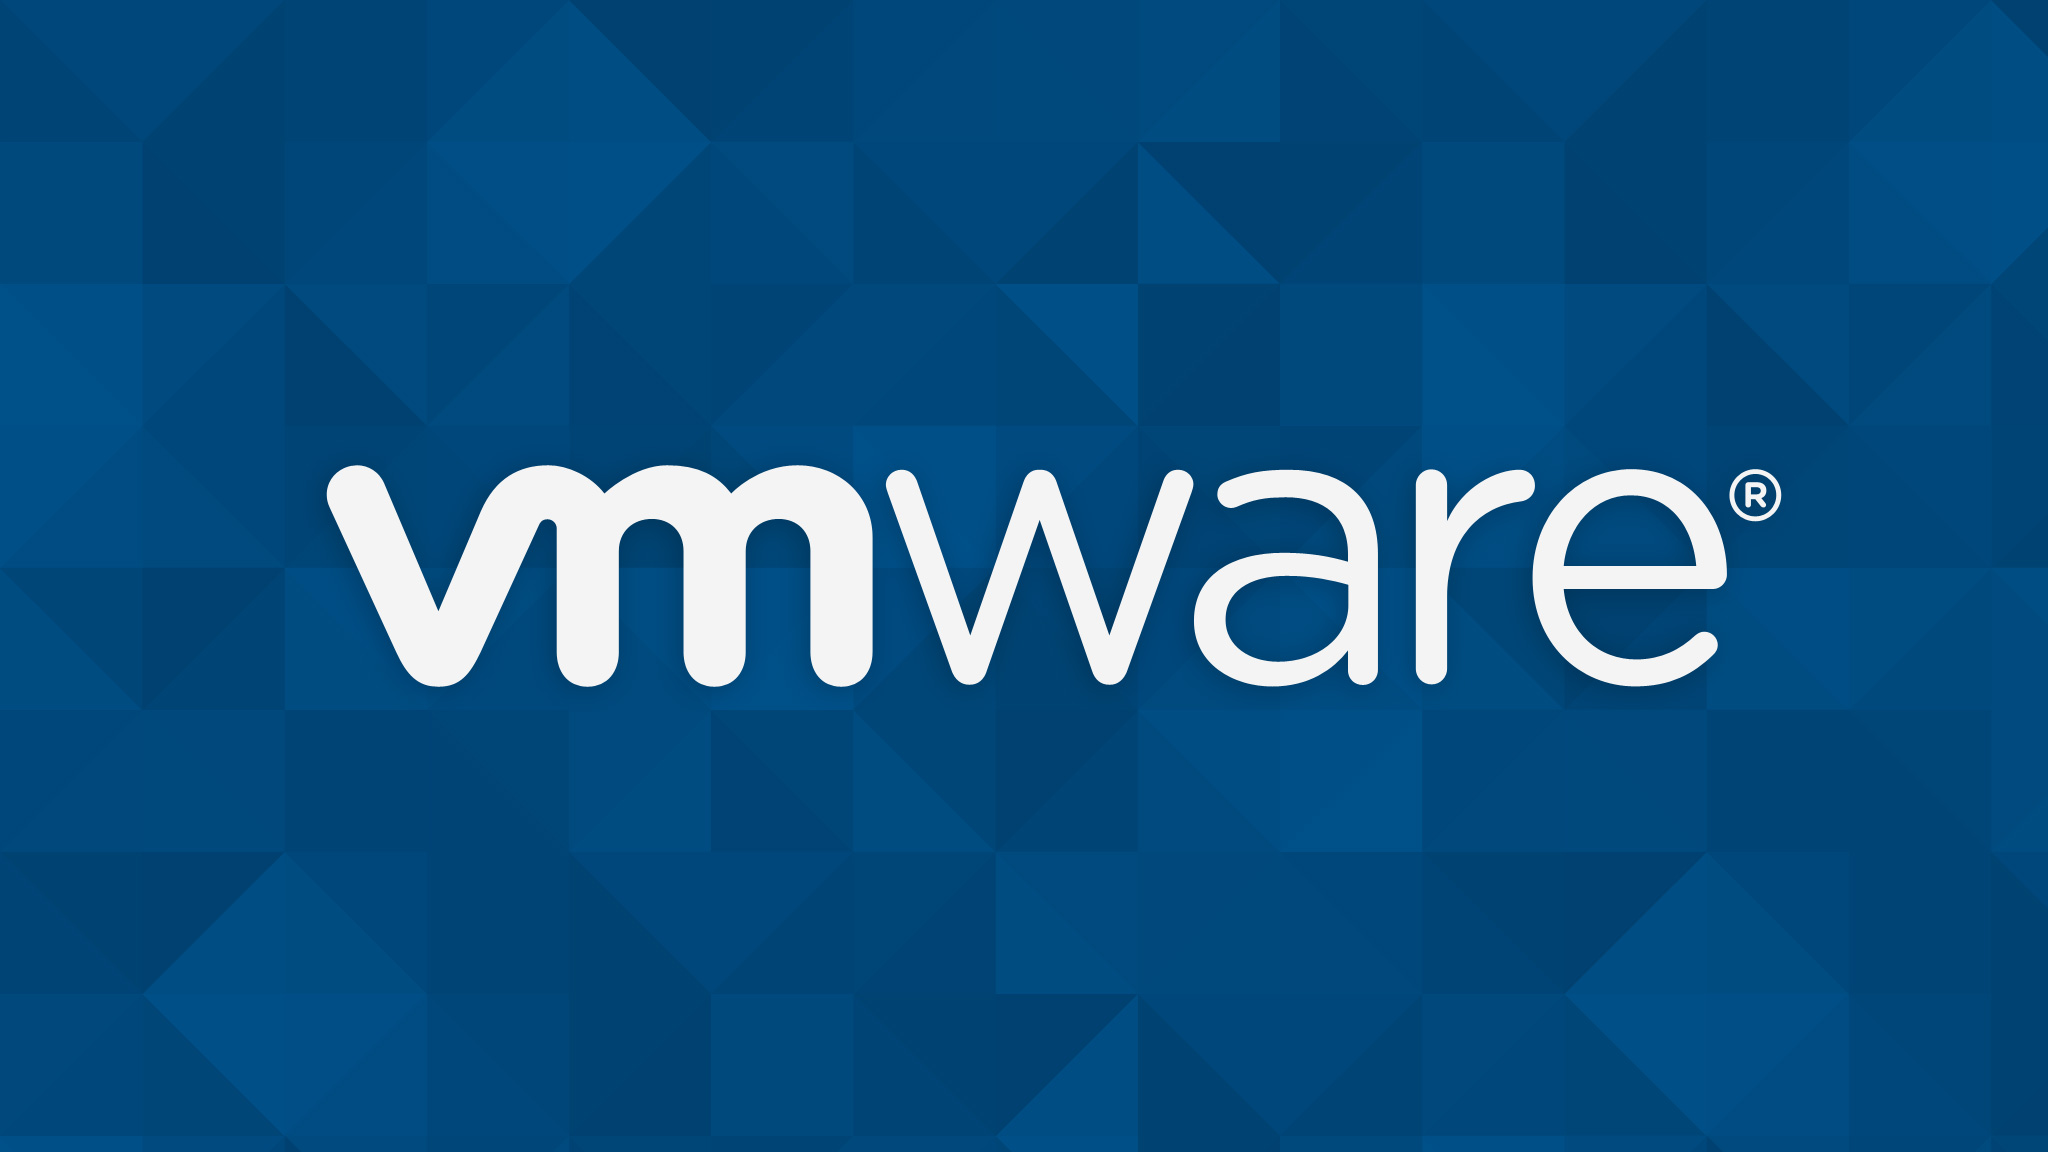 vmware vsphere6, vmware cloud certifications, it certifications